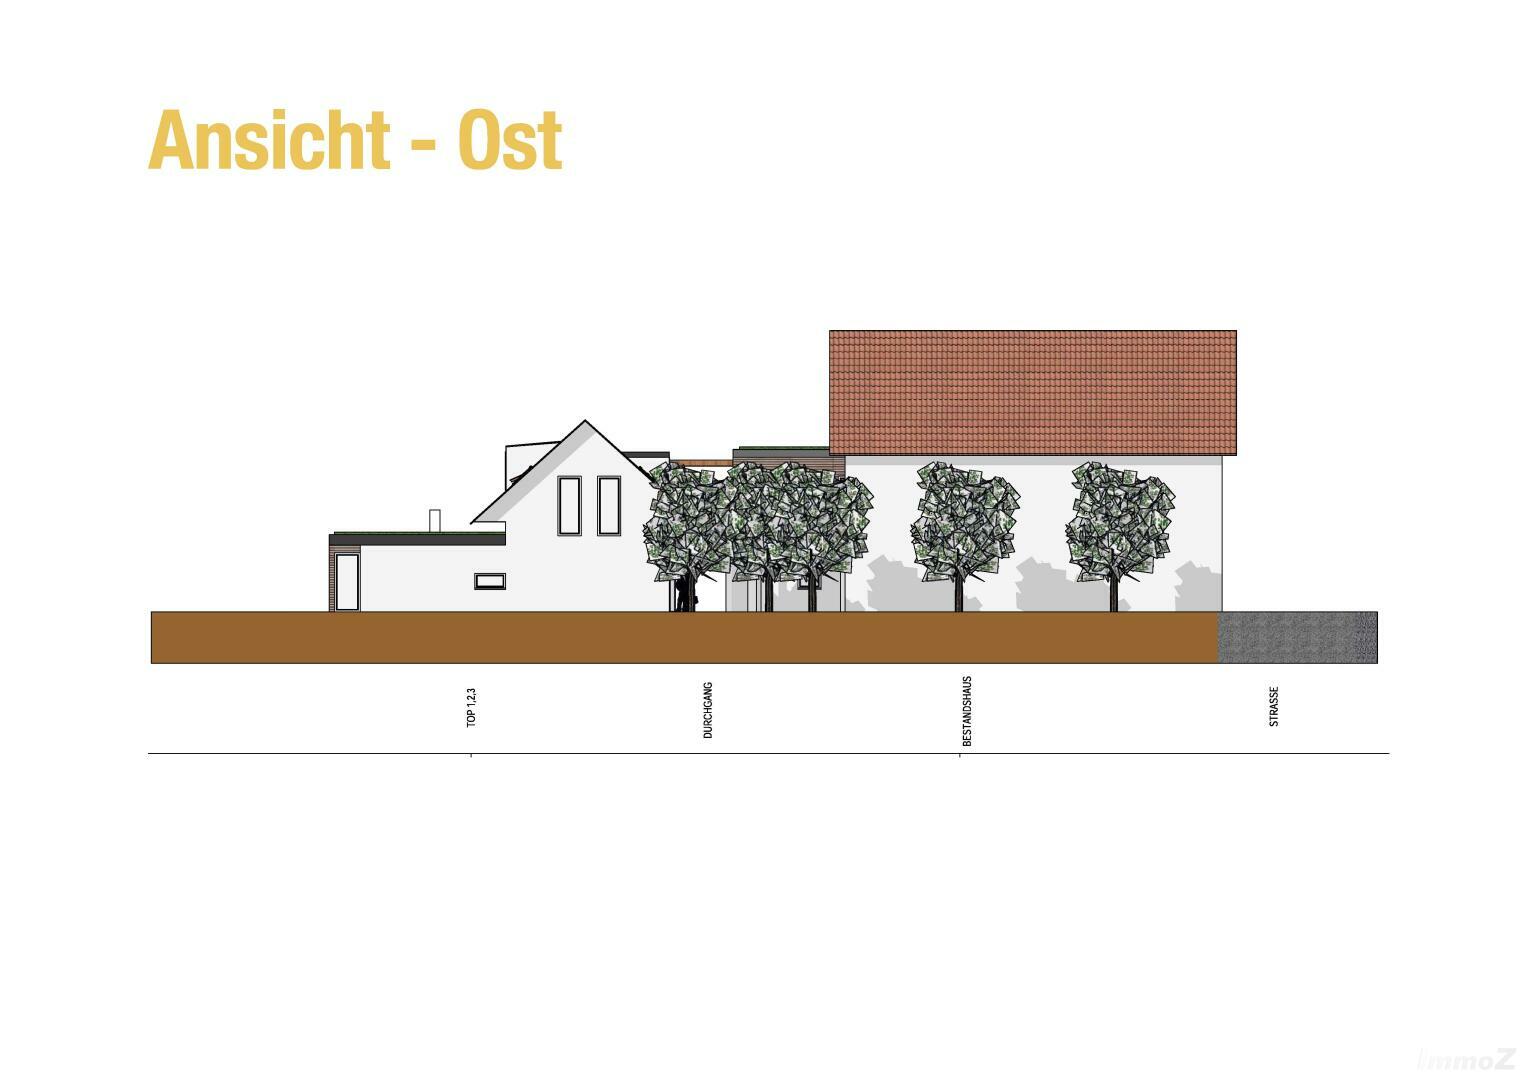 Haus zu kaufen: Ebenholzstraße 24, 8062 Gschwendt - Projekt Ansicht Ost